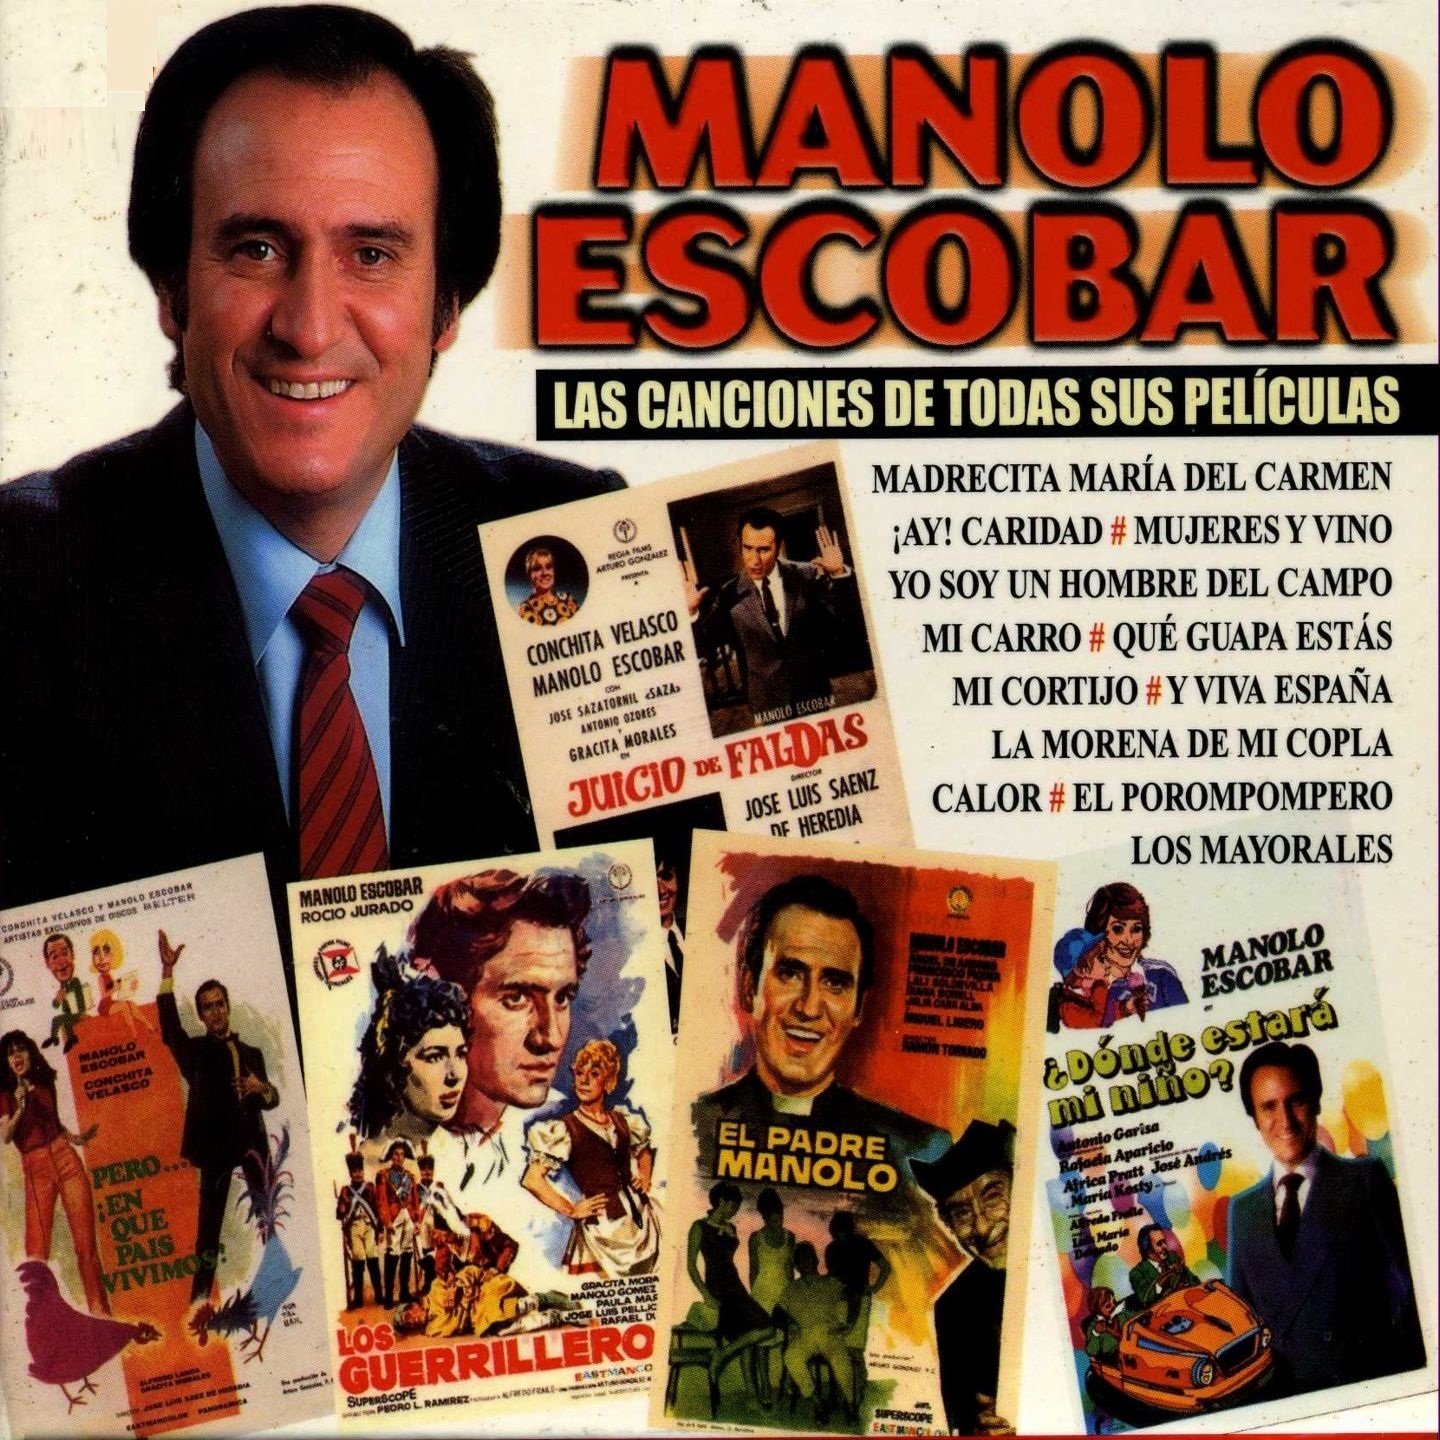 Los Mayorales - De : "Me Has Hecho Perder el Juicio" - 1973 — Manolo  Escobar | Last.fm